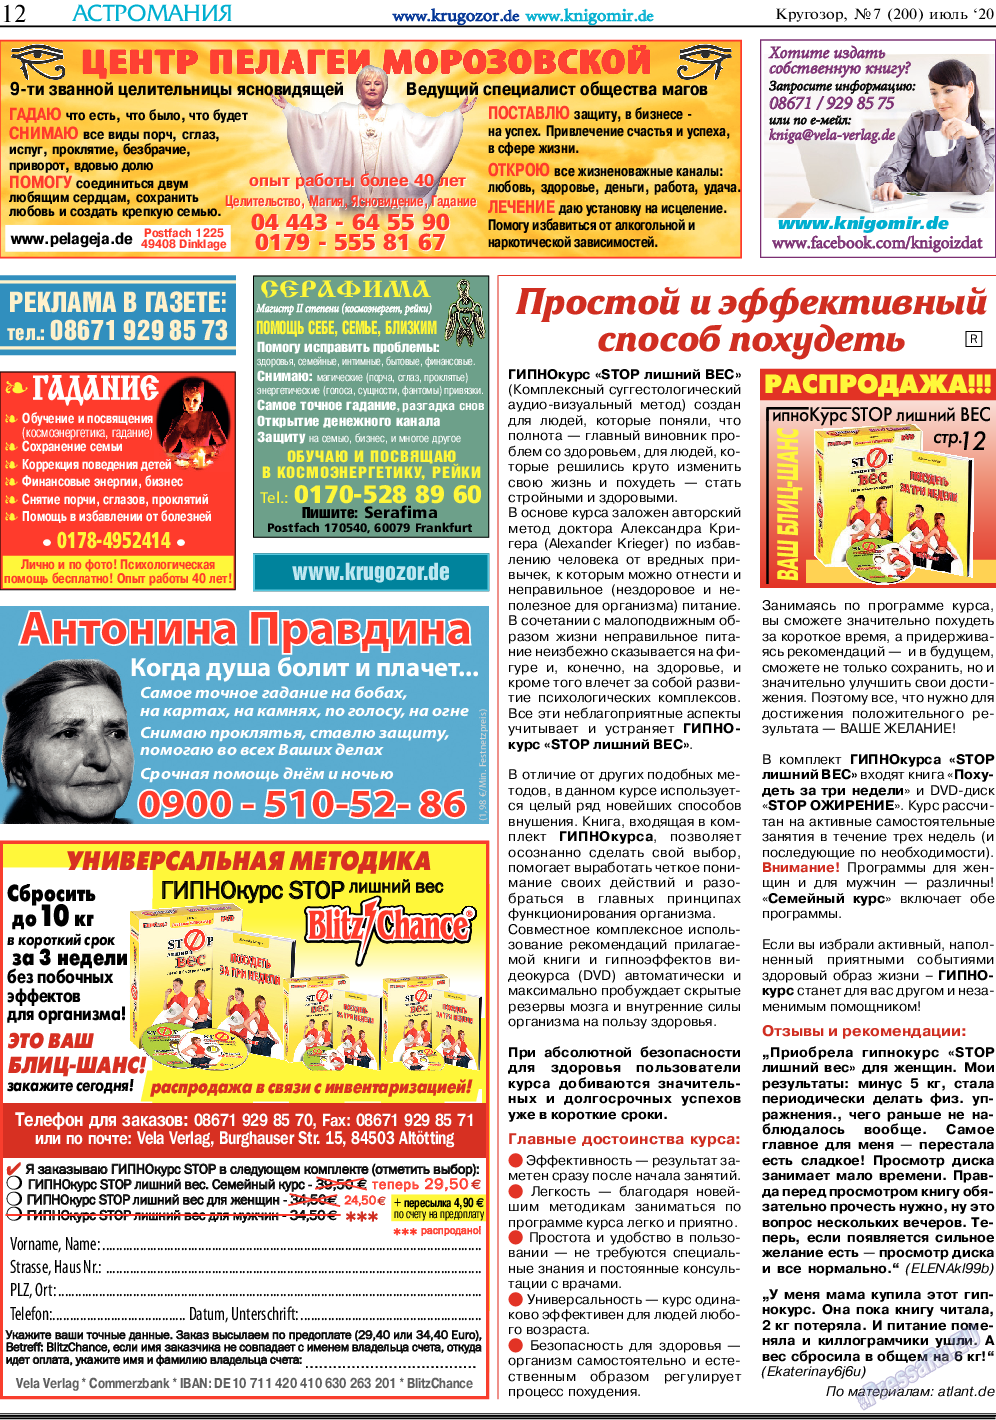 Кругозор, газета. 2020 №7 стр.12